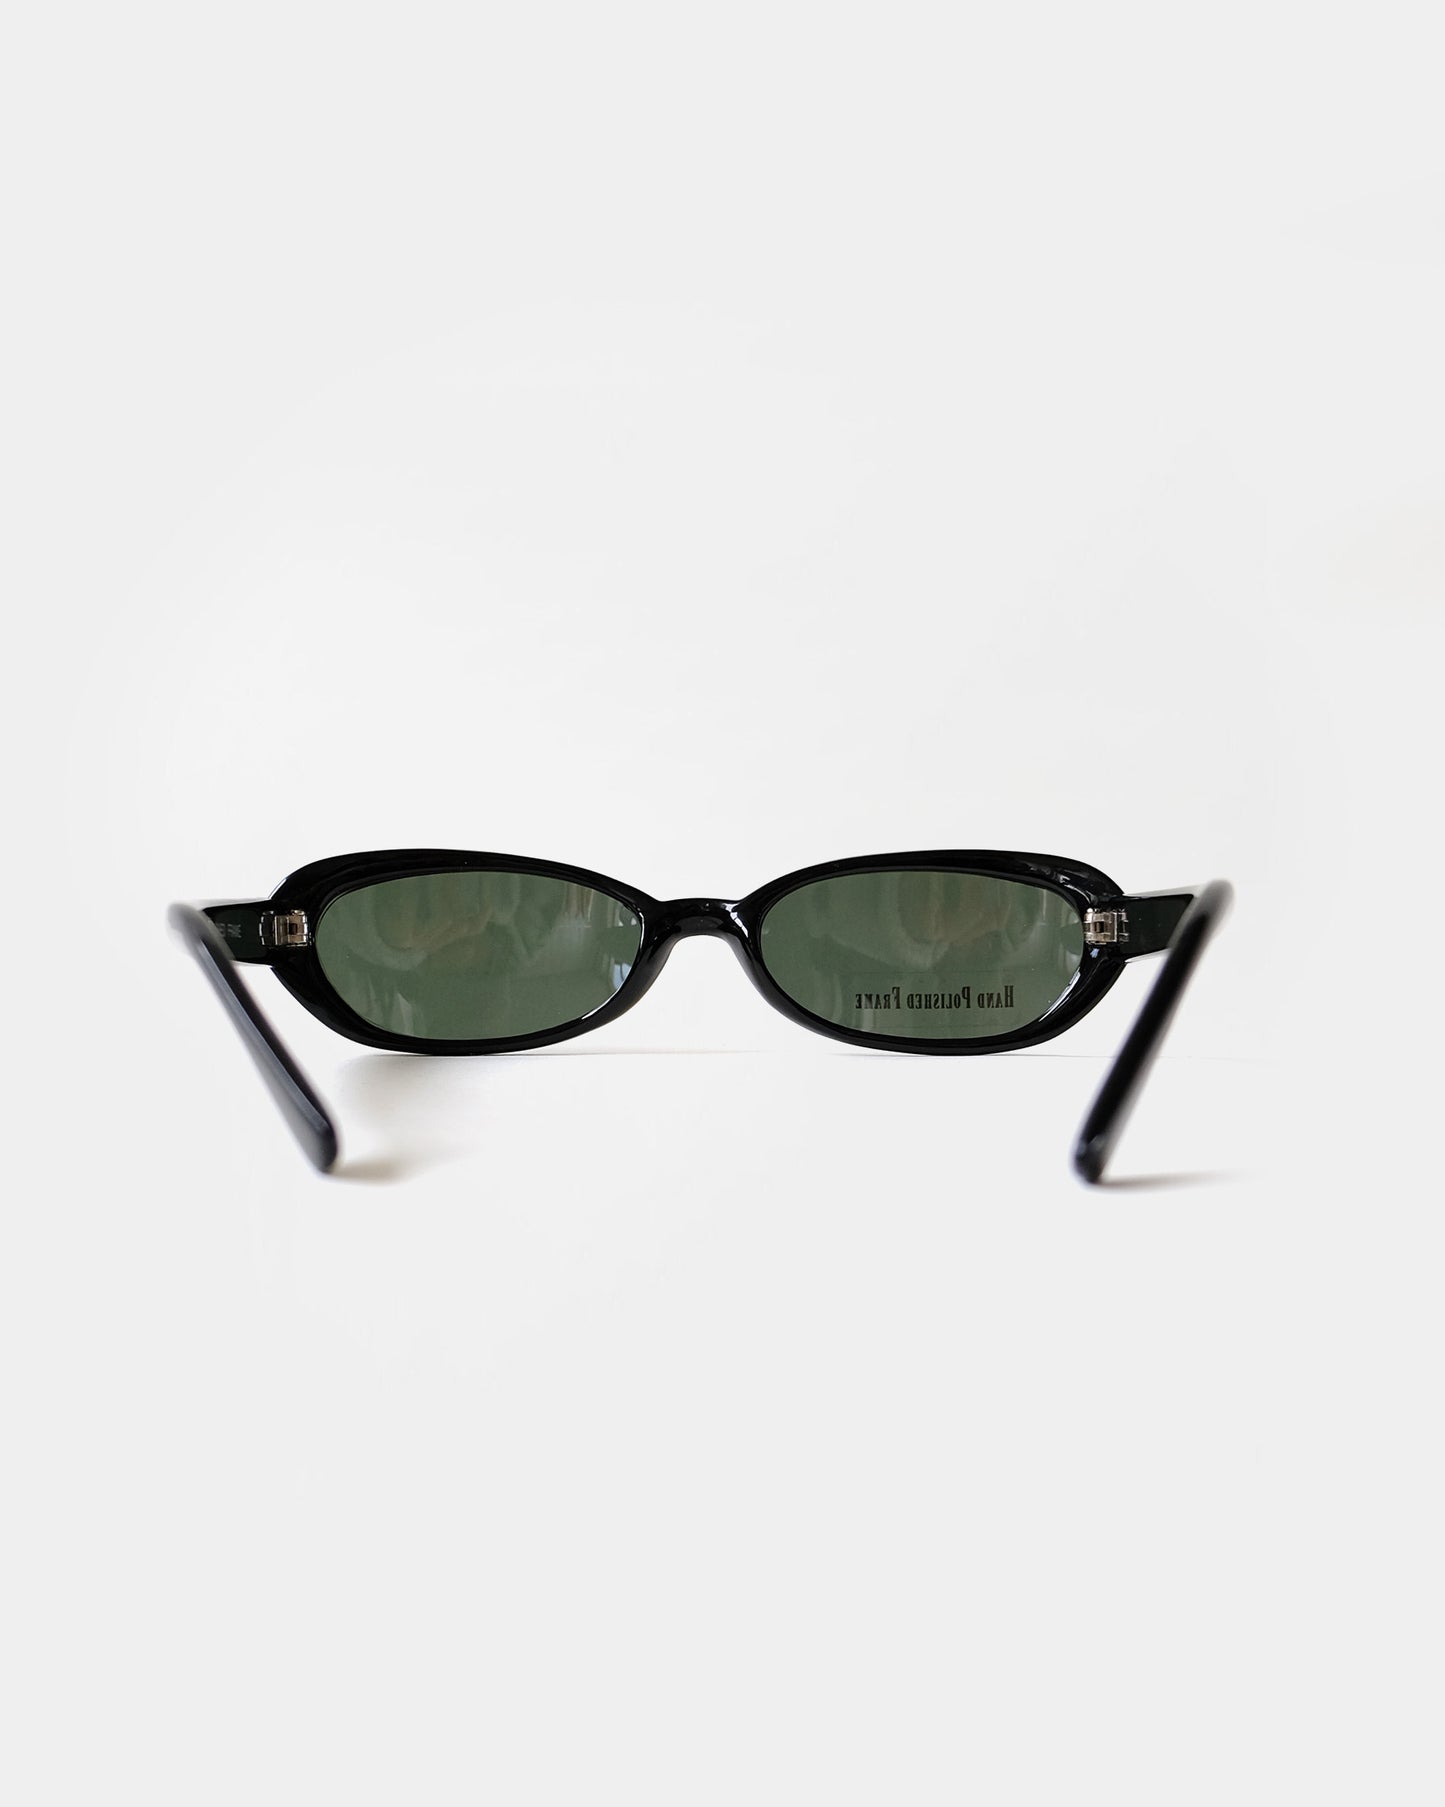 NOS 90s Frame sunglasses